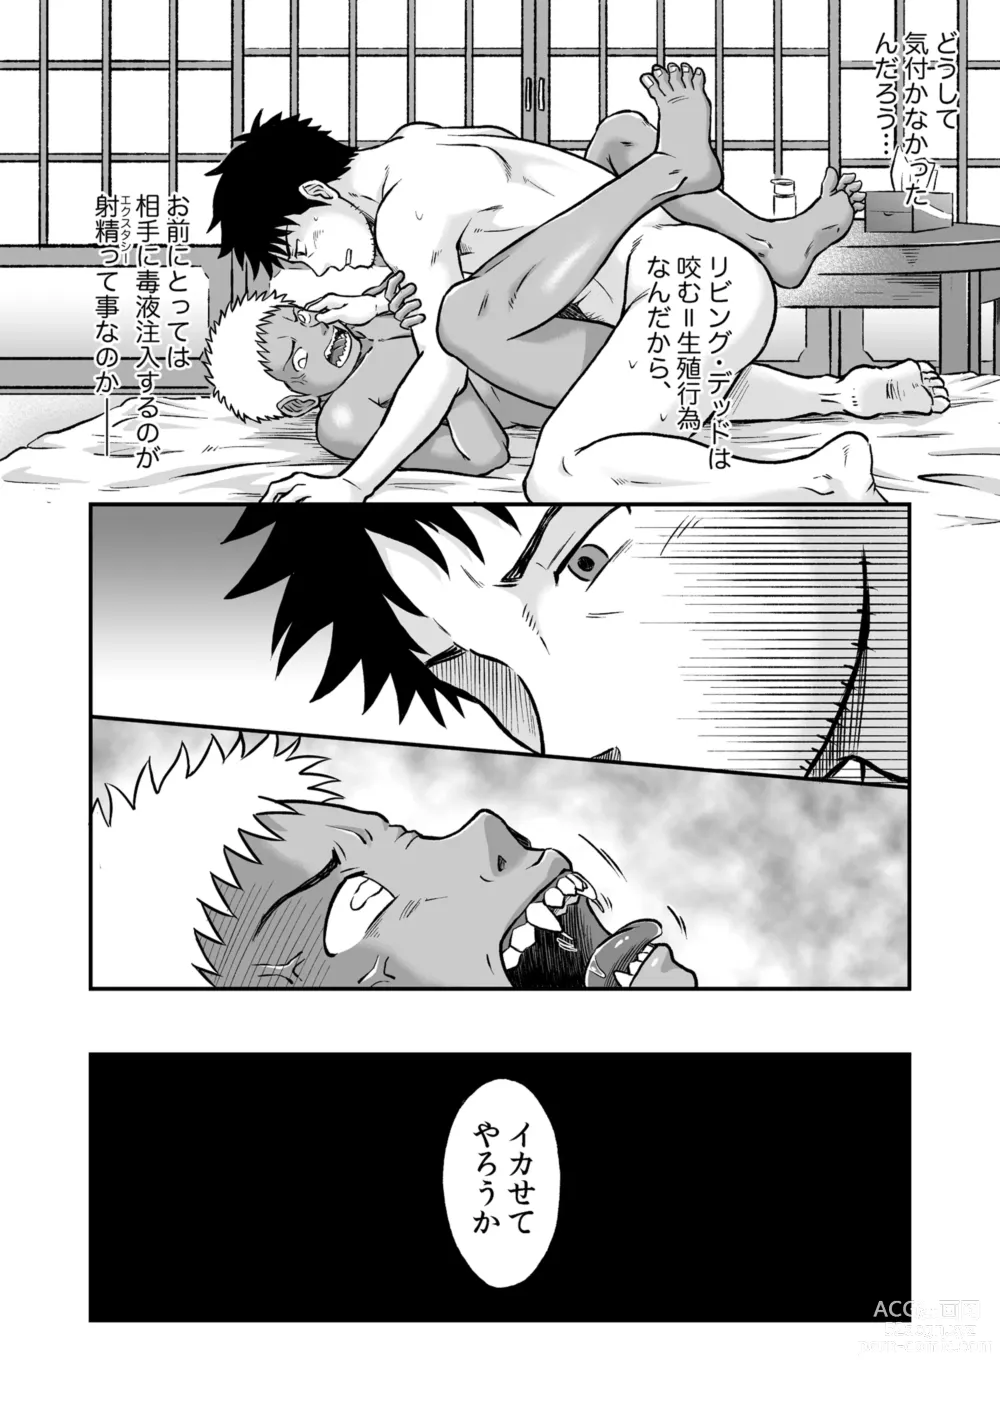 Page 7 of doujinshi Bokura wa Minna Ikiteiru 3